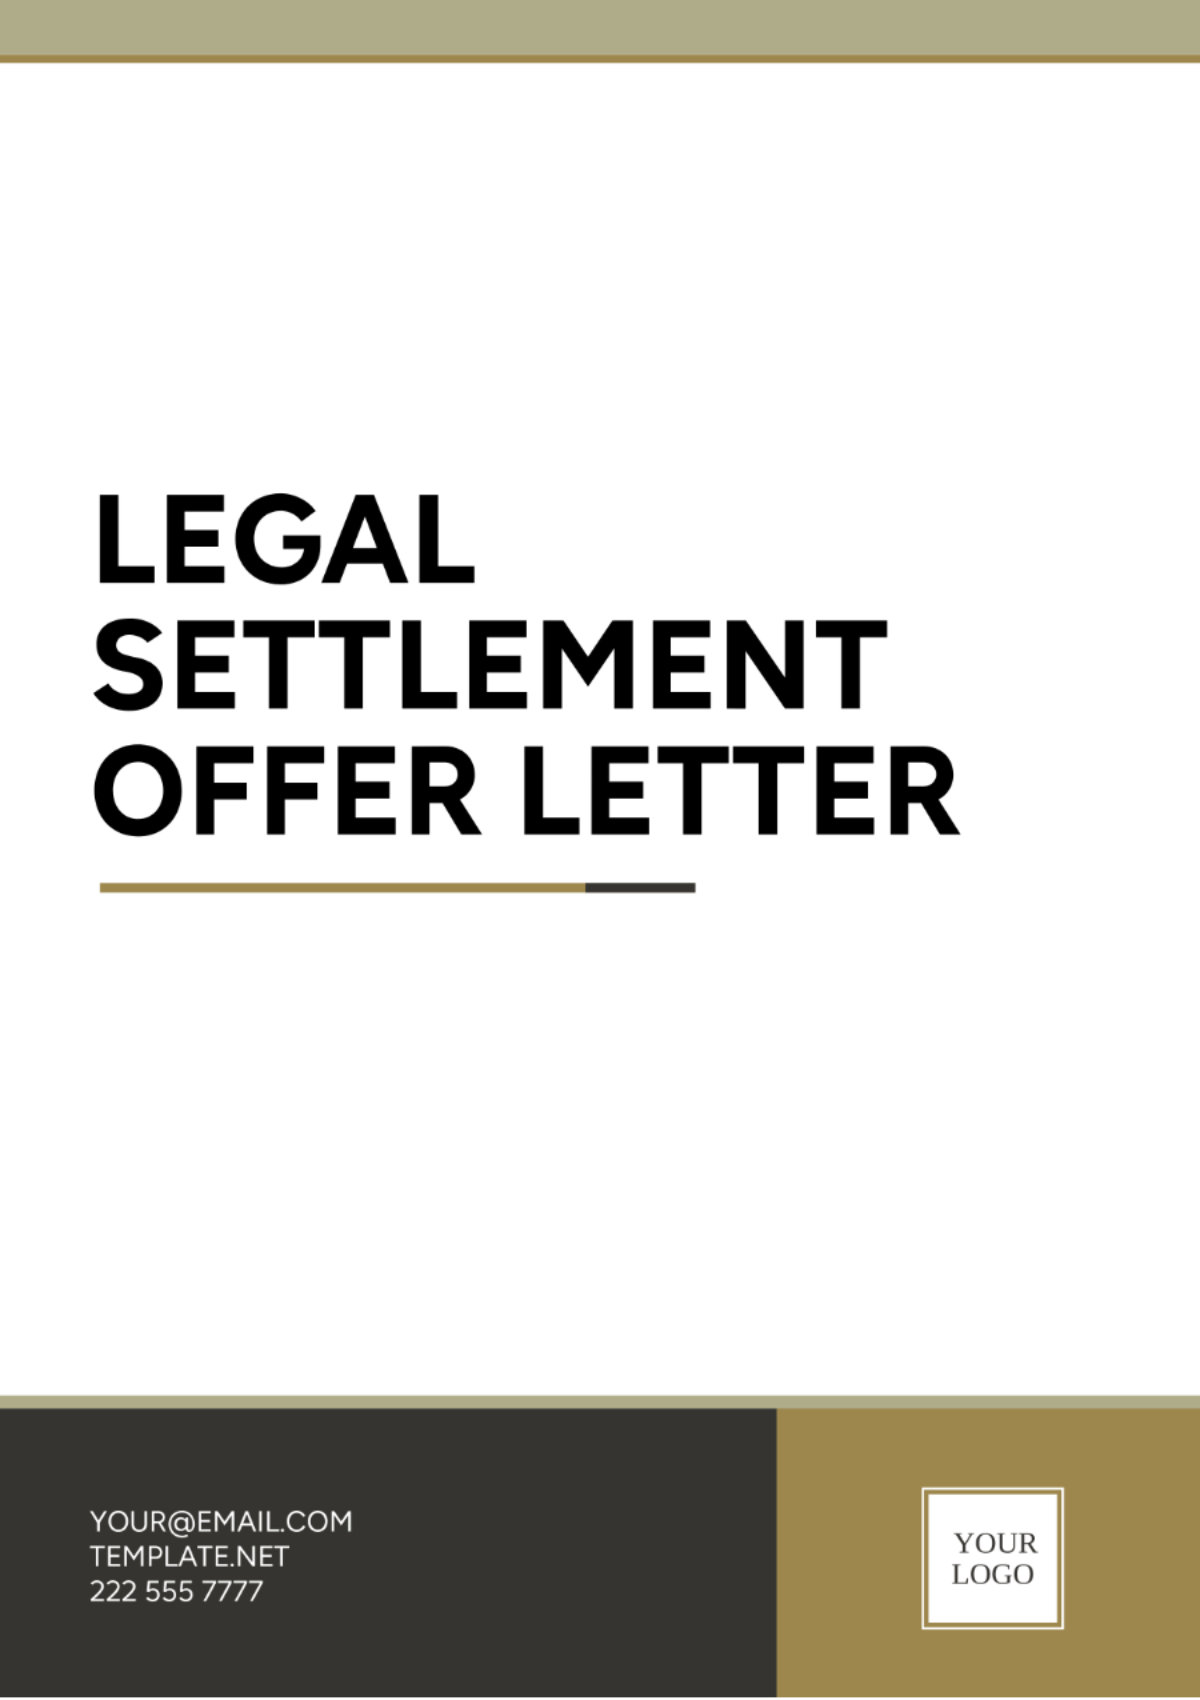 Free Legal Settlement Offer Letter Template